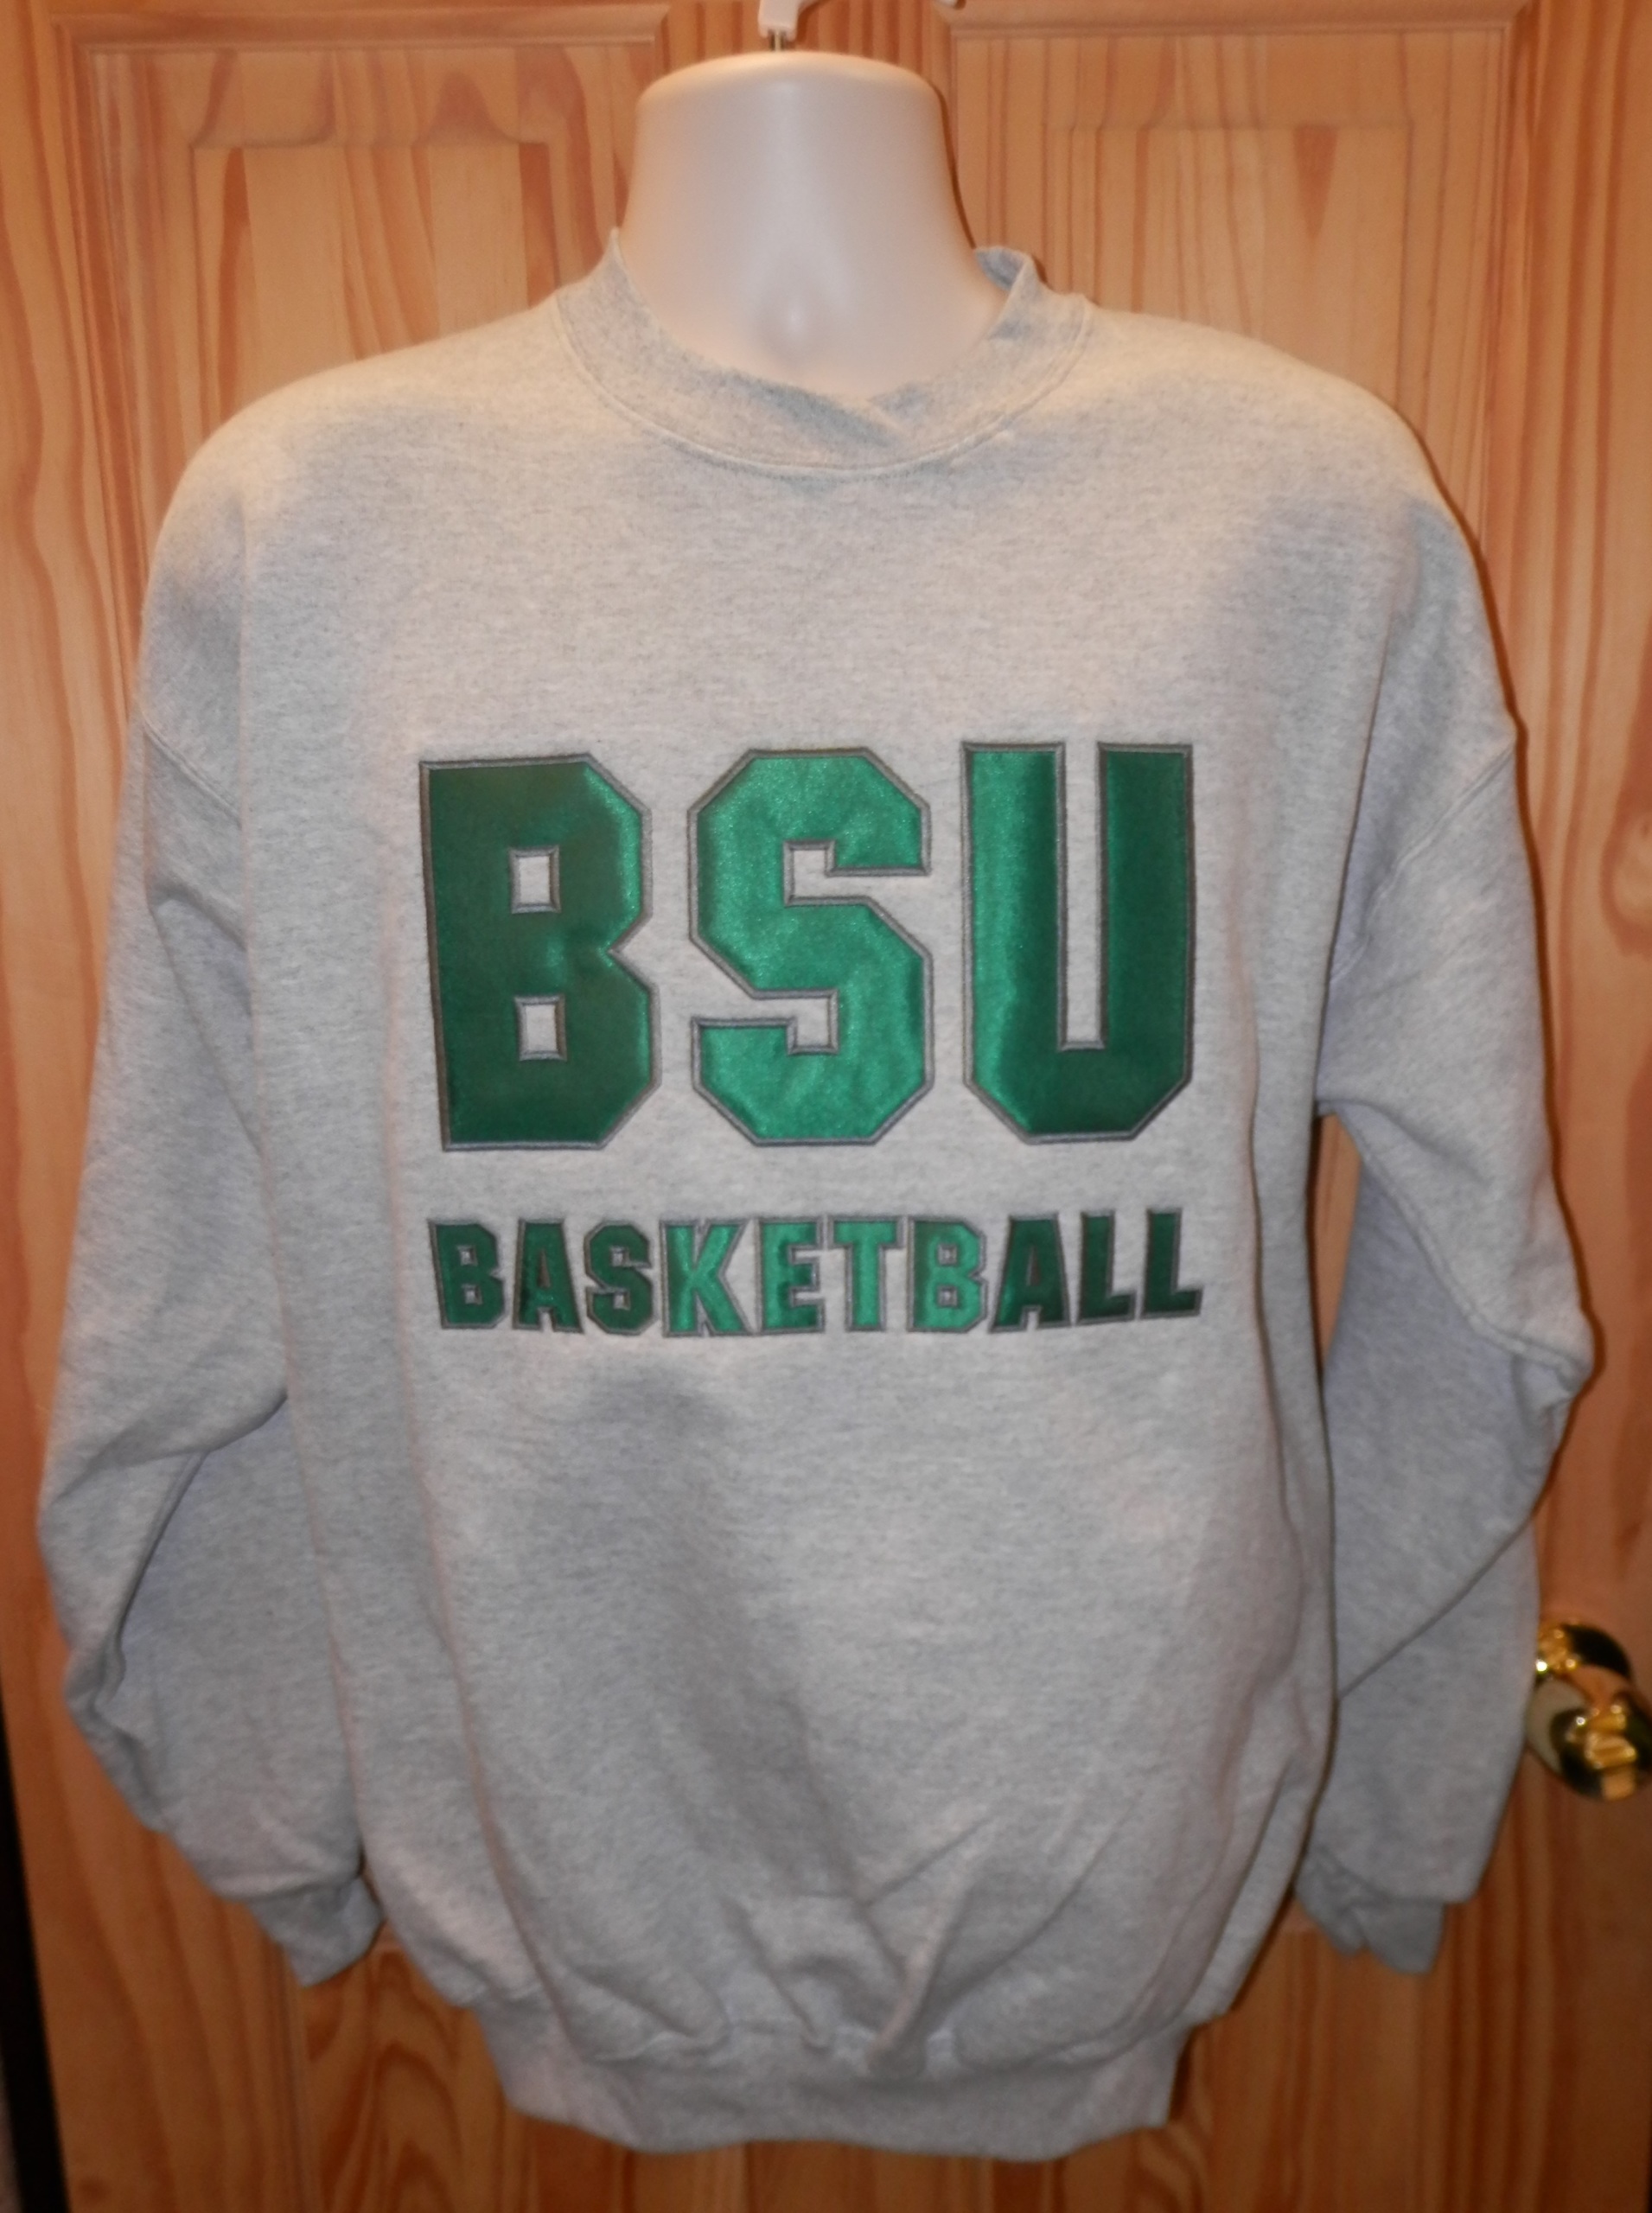 BSU Basketball Applique Crewneck Sweatshirt